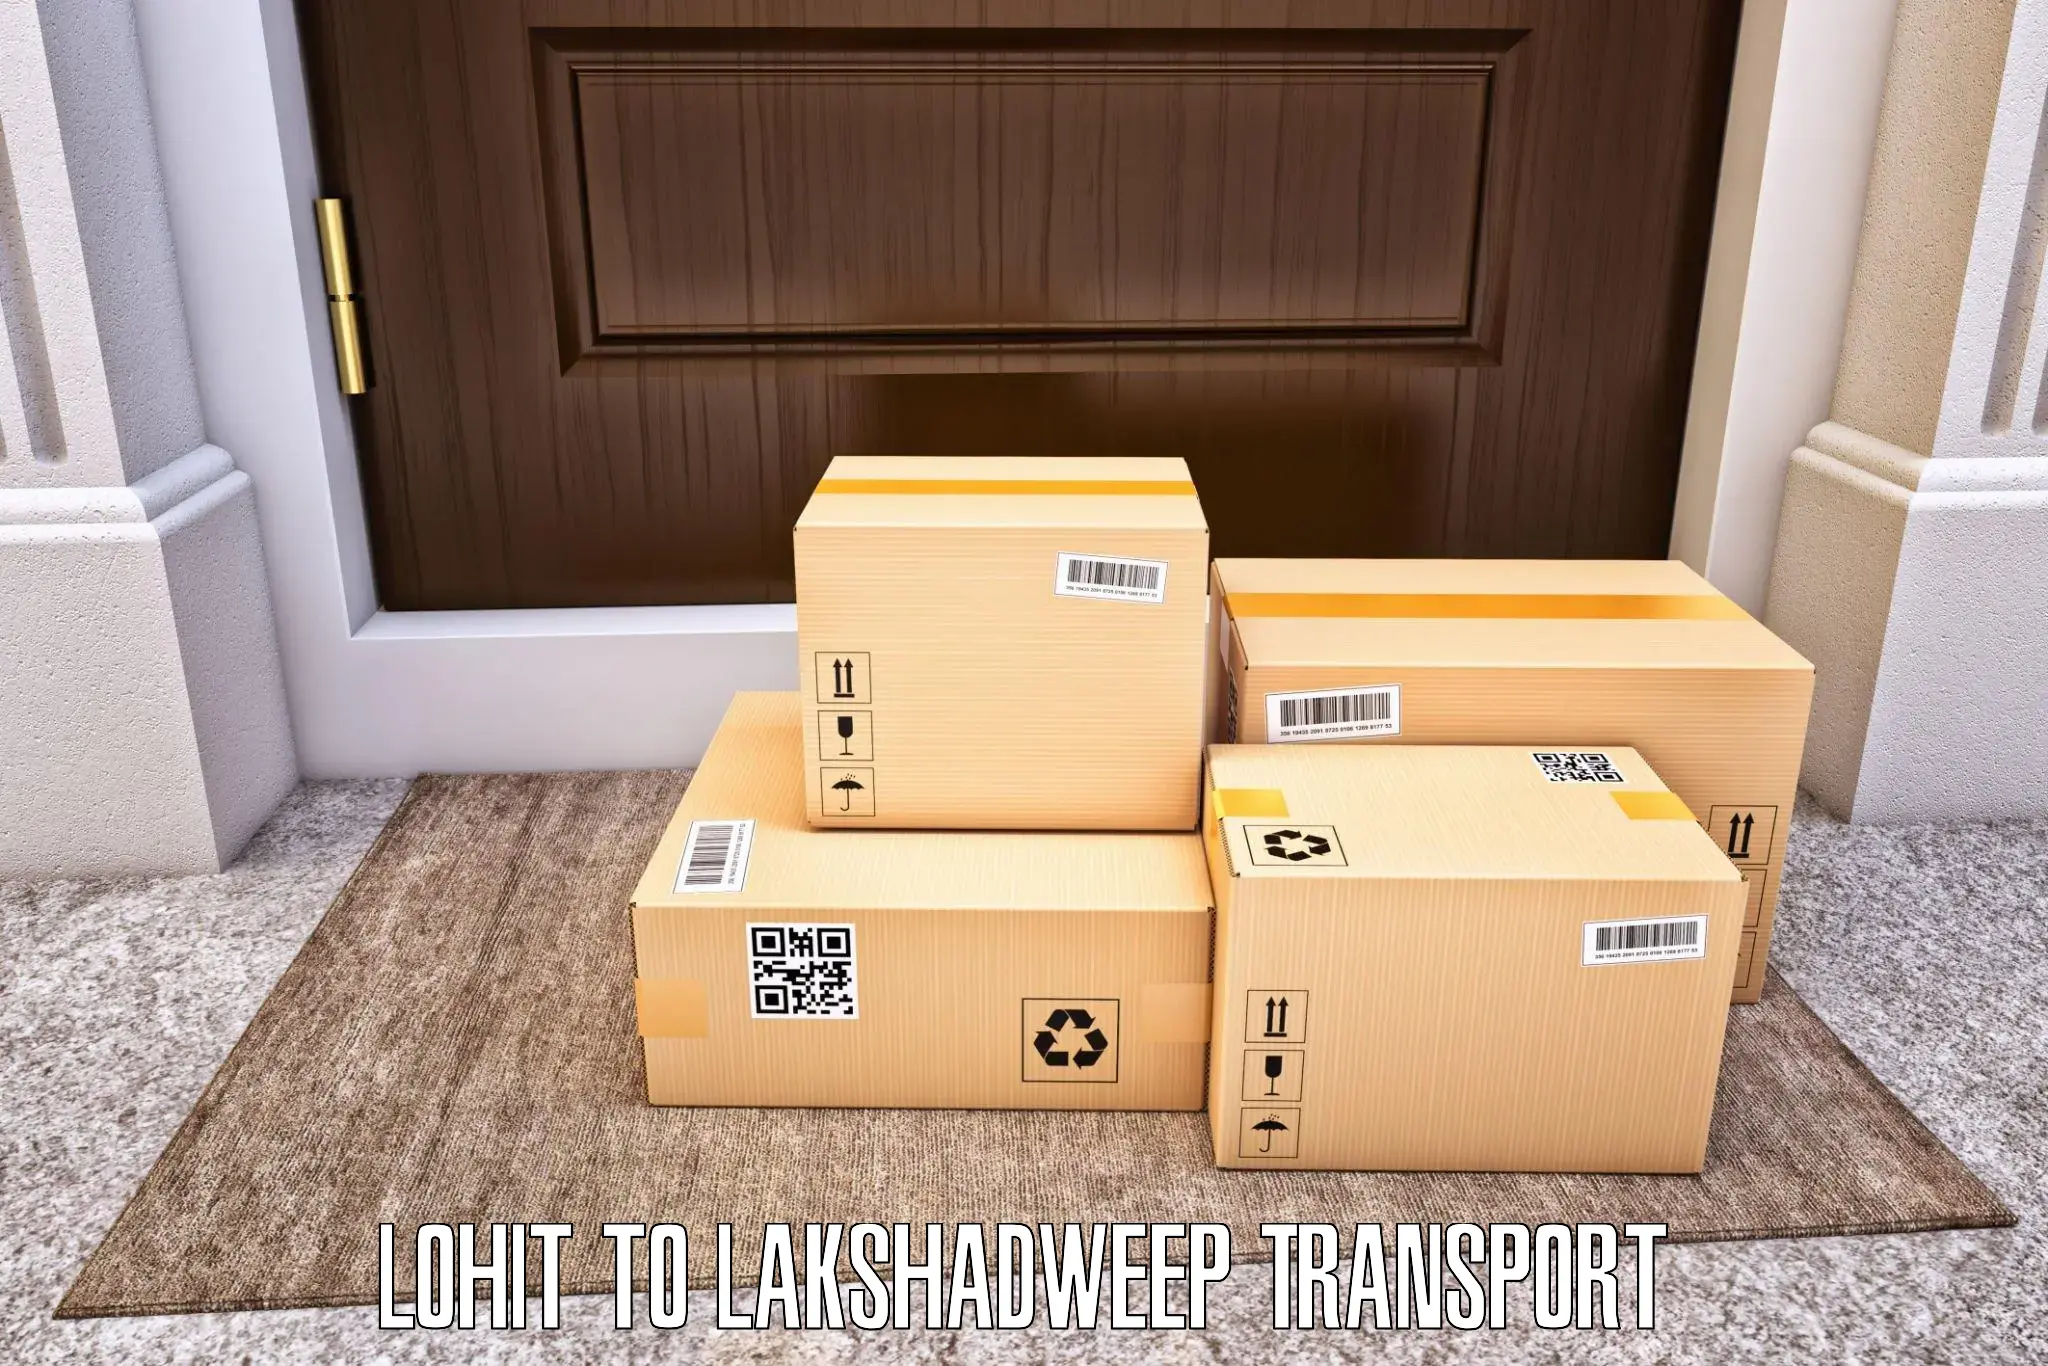 Bike transport service Lohit to Lakshadweep